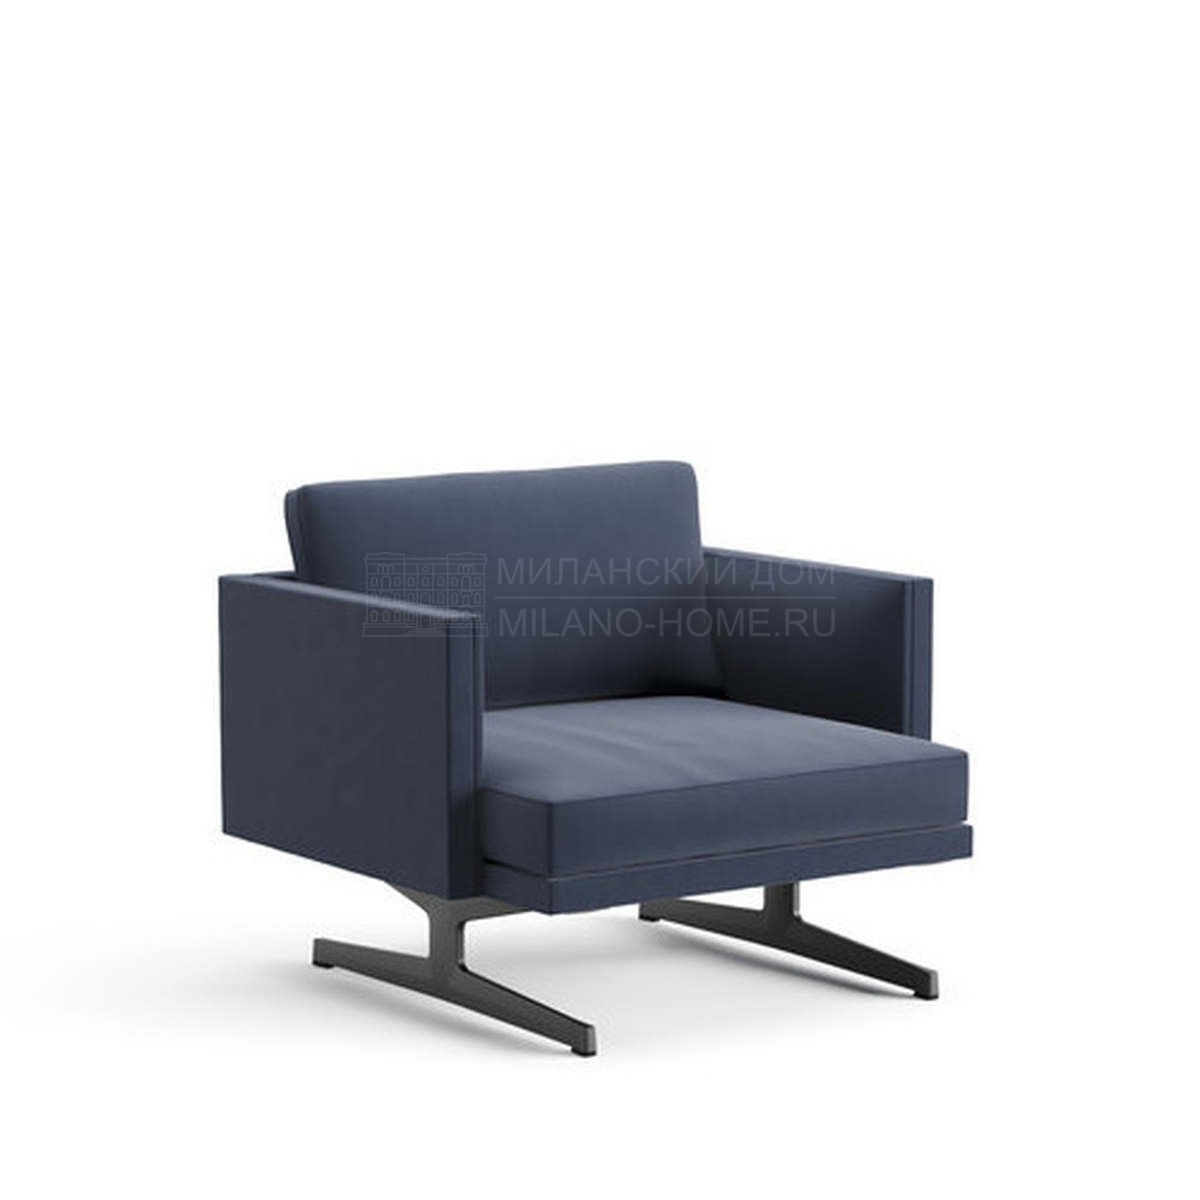 Кресло Steeve / art.5211 из Италии фабрики ARPER